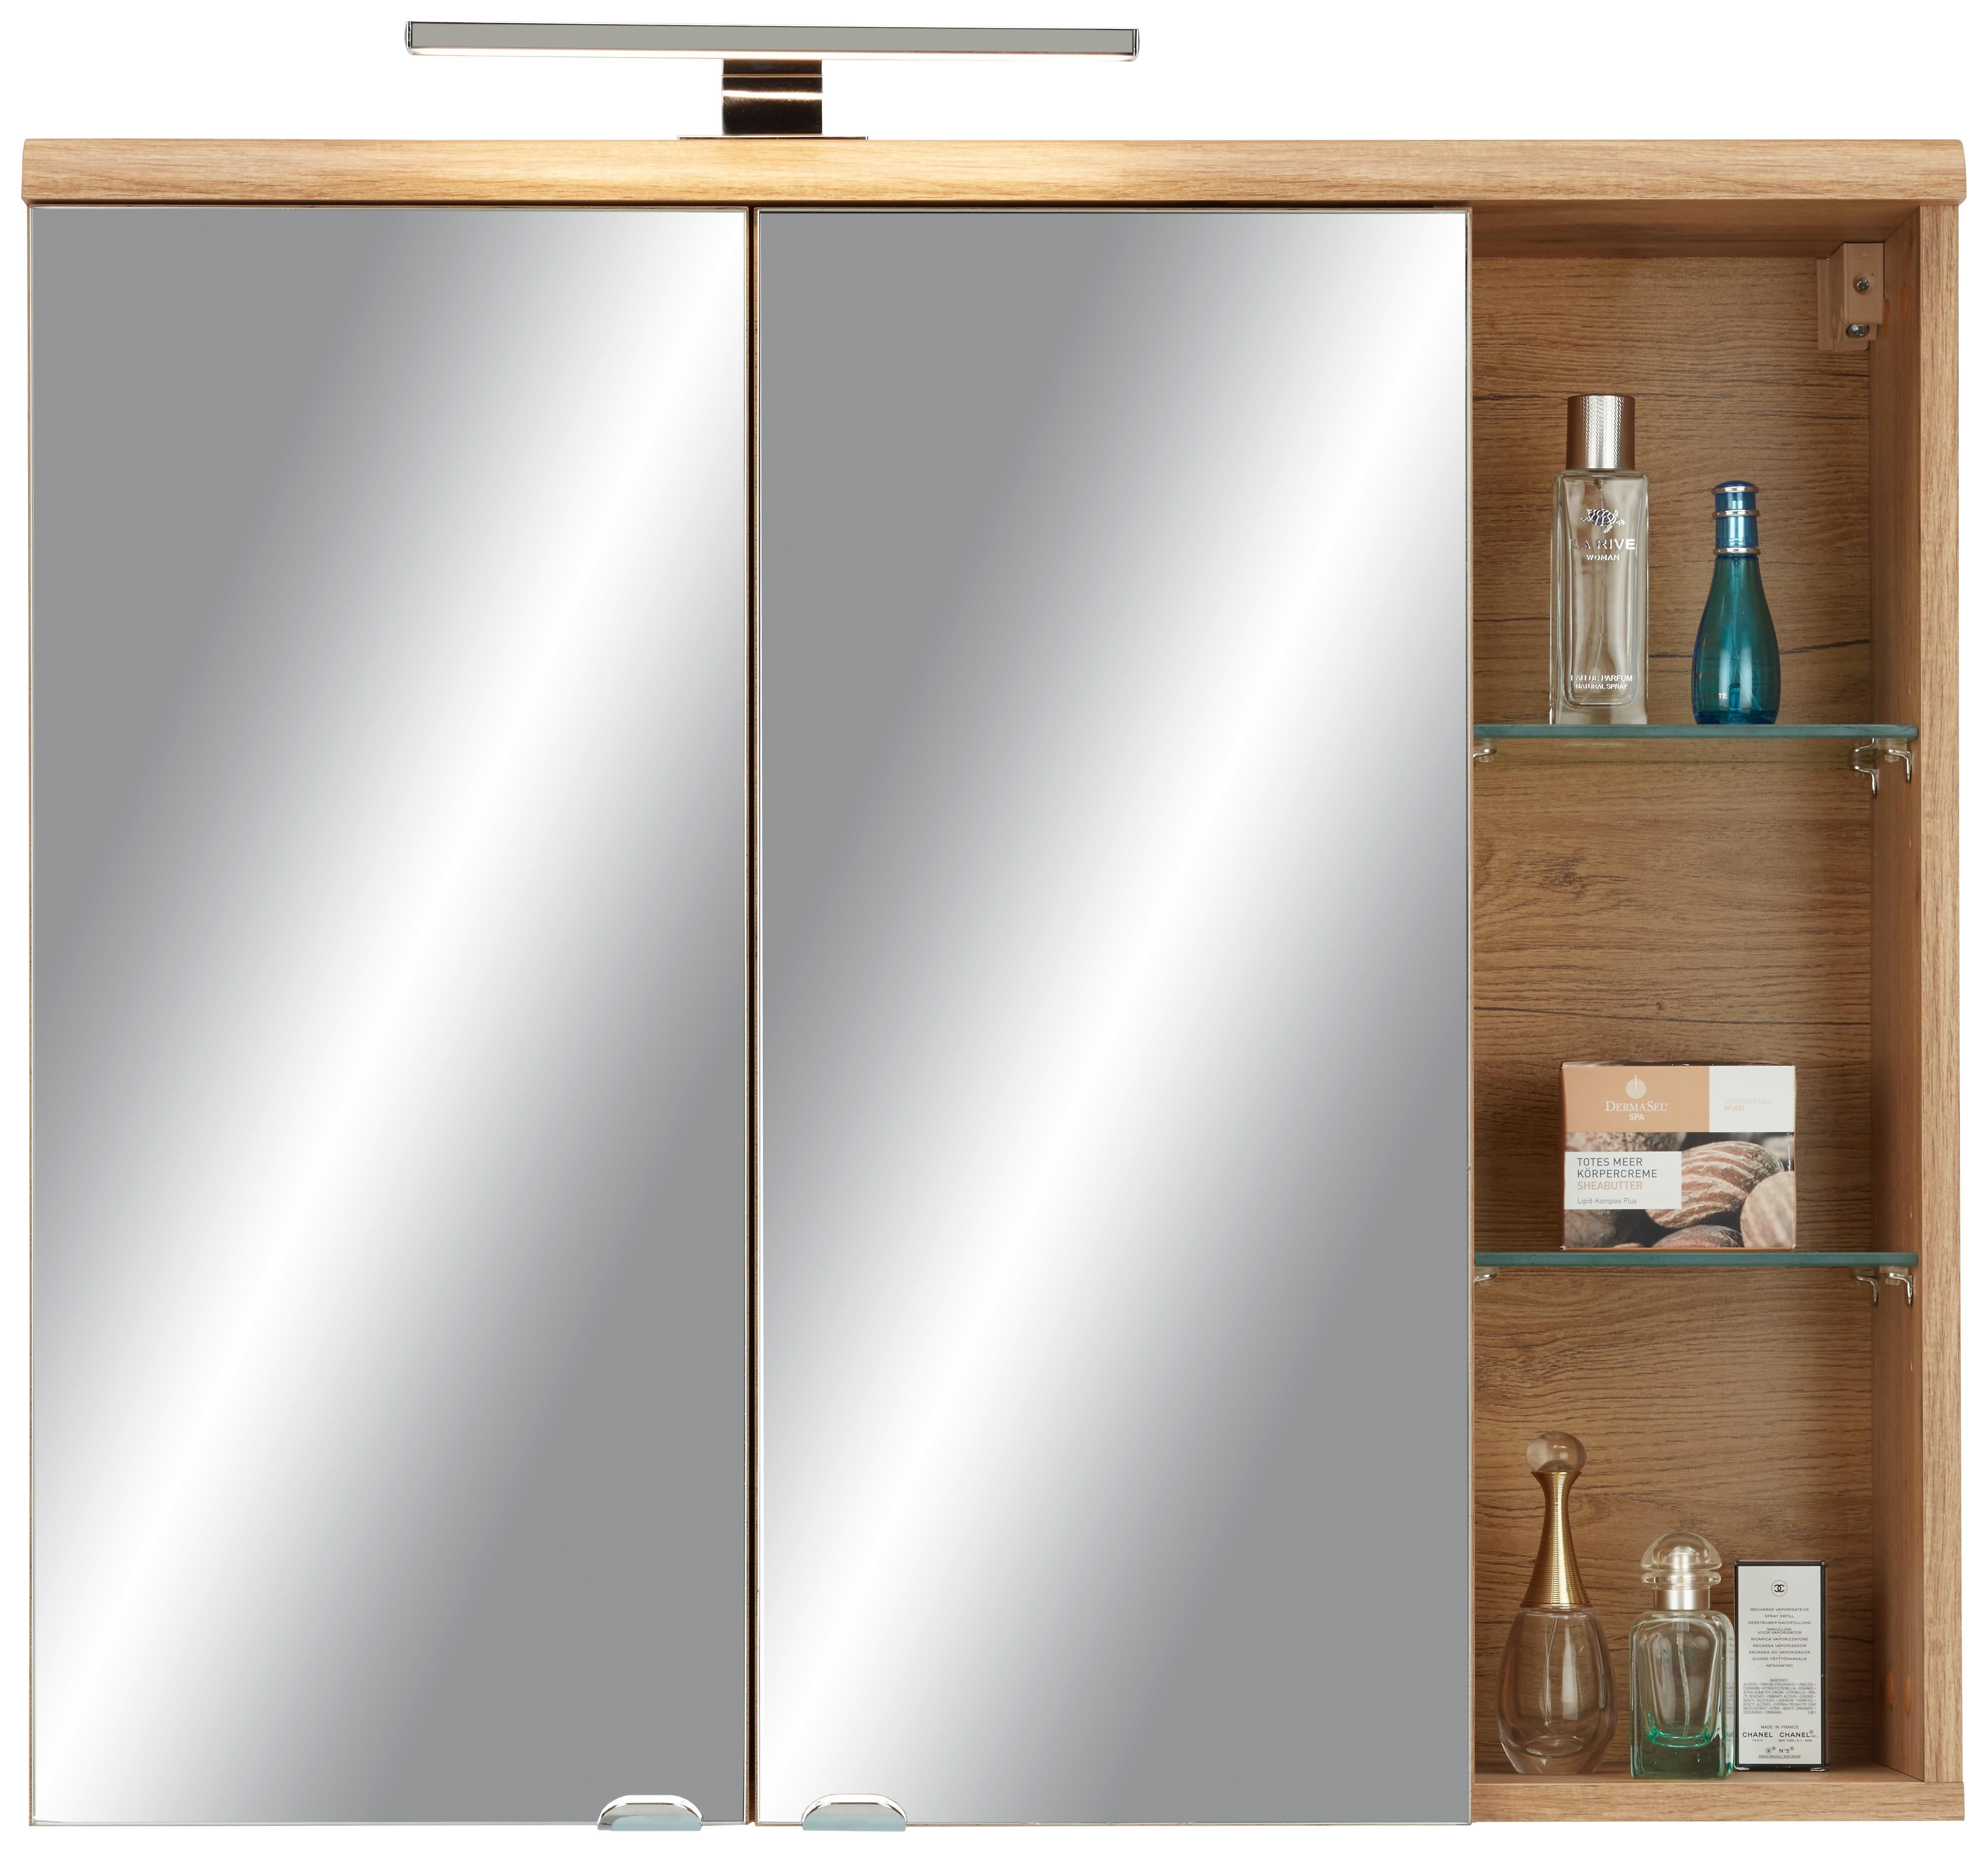 Skříňka Se Zrcadlem Float -Exklusiv- - barvy dubu/barvy chromu, Moderní, kov/kompozitní dřevo (80/70/23cm) - Premium Living